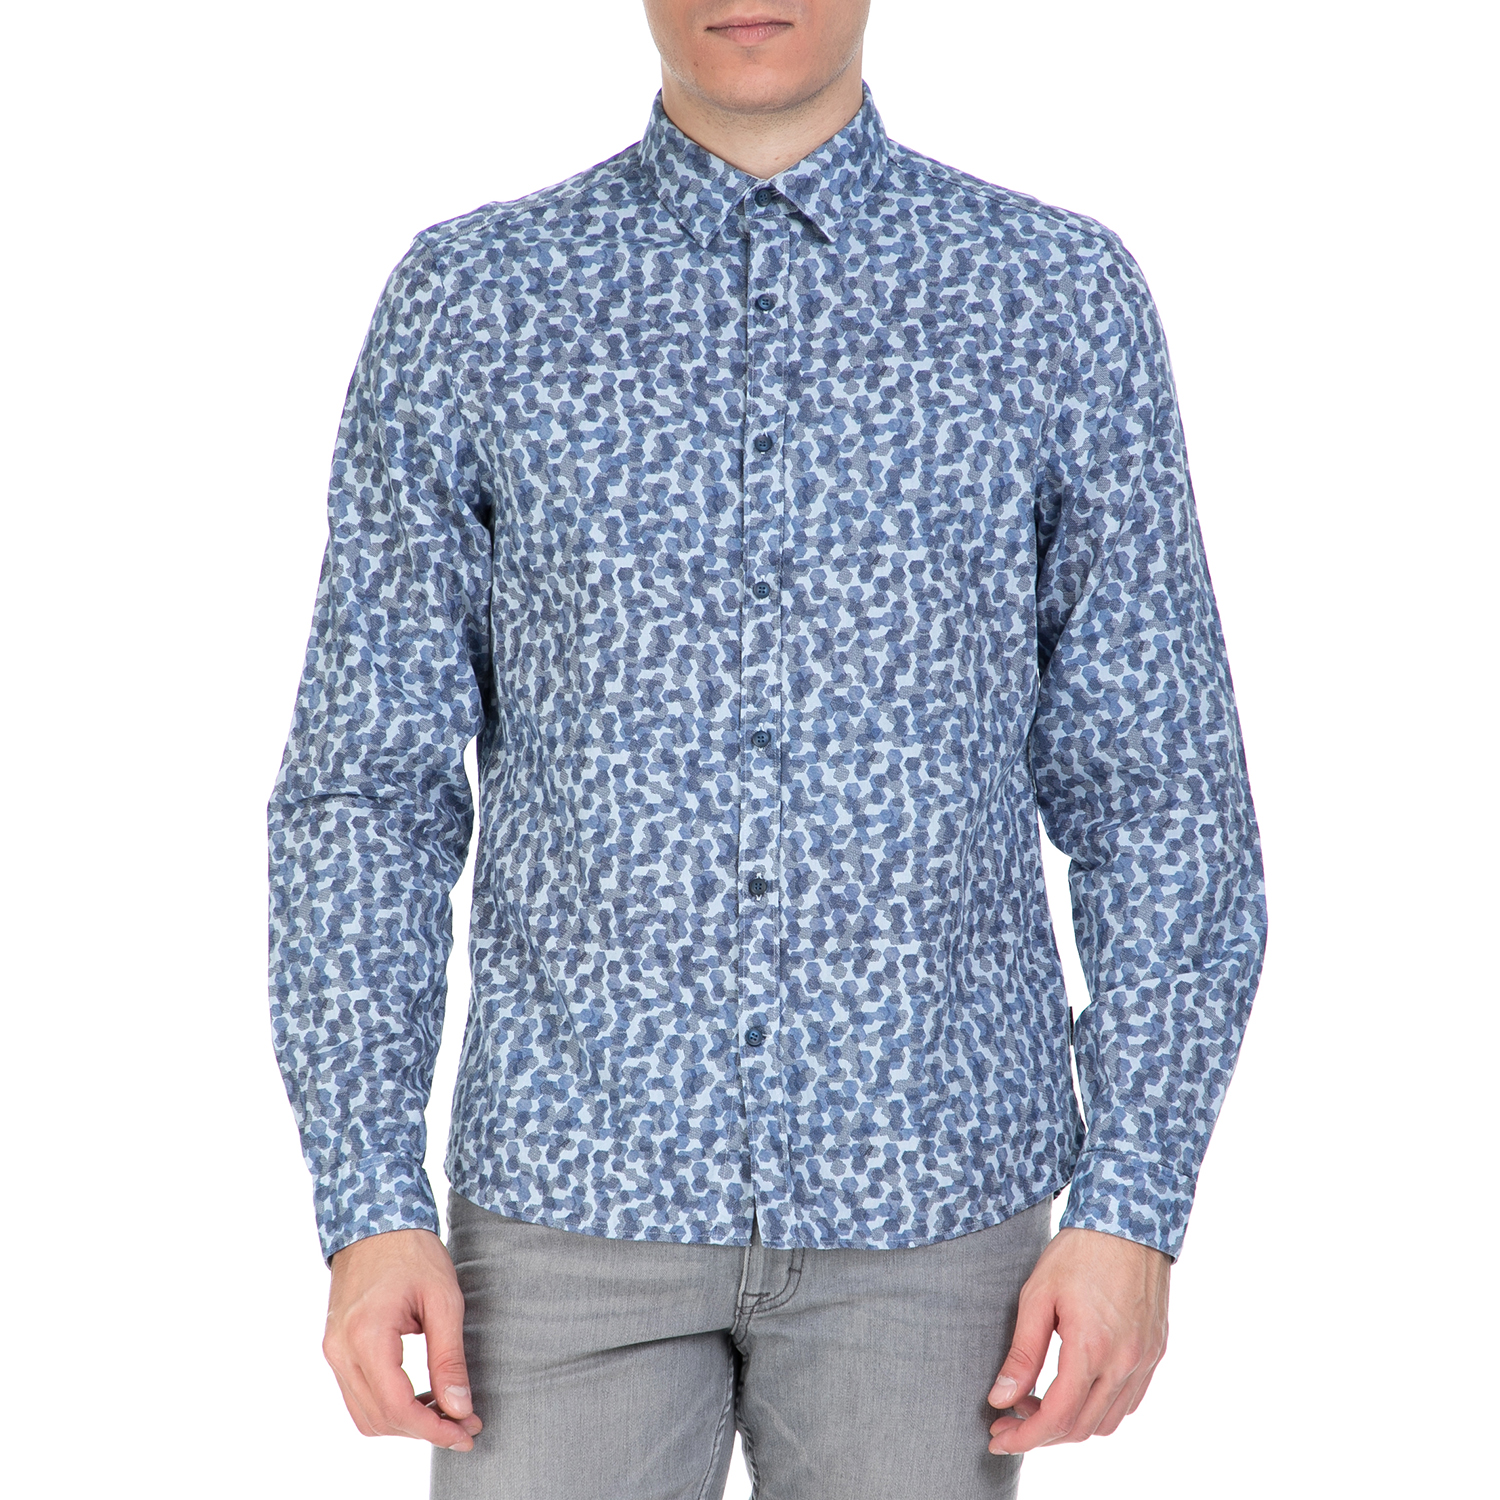 Ανδρικά/Ρούχα/Πουκάμισα/Μακρυμάνικα CK - Ανδρικό πουκάμισο CK GALEN μπλε με μοτίβο